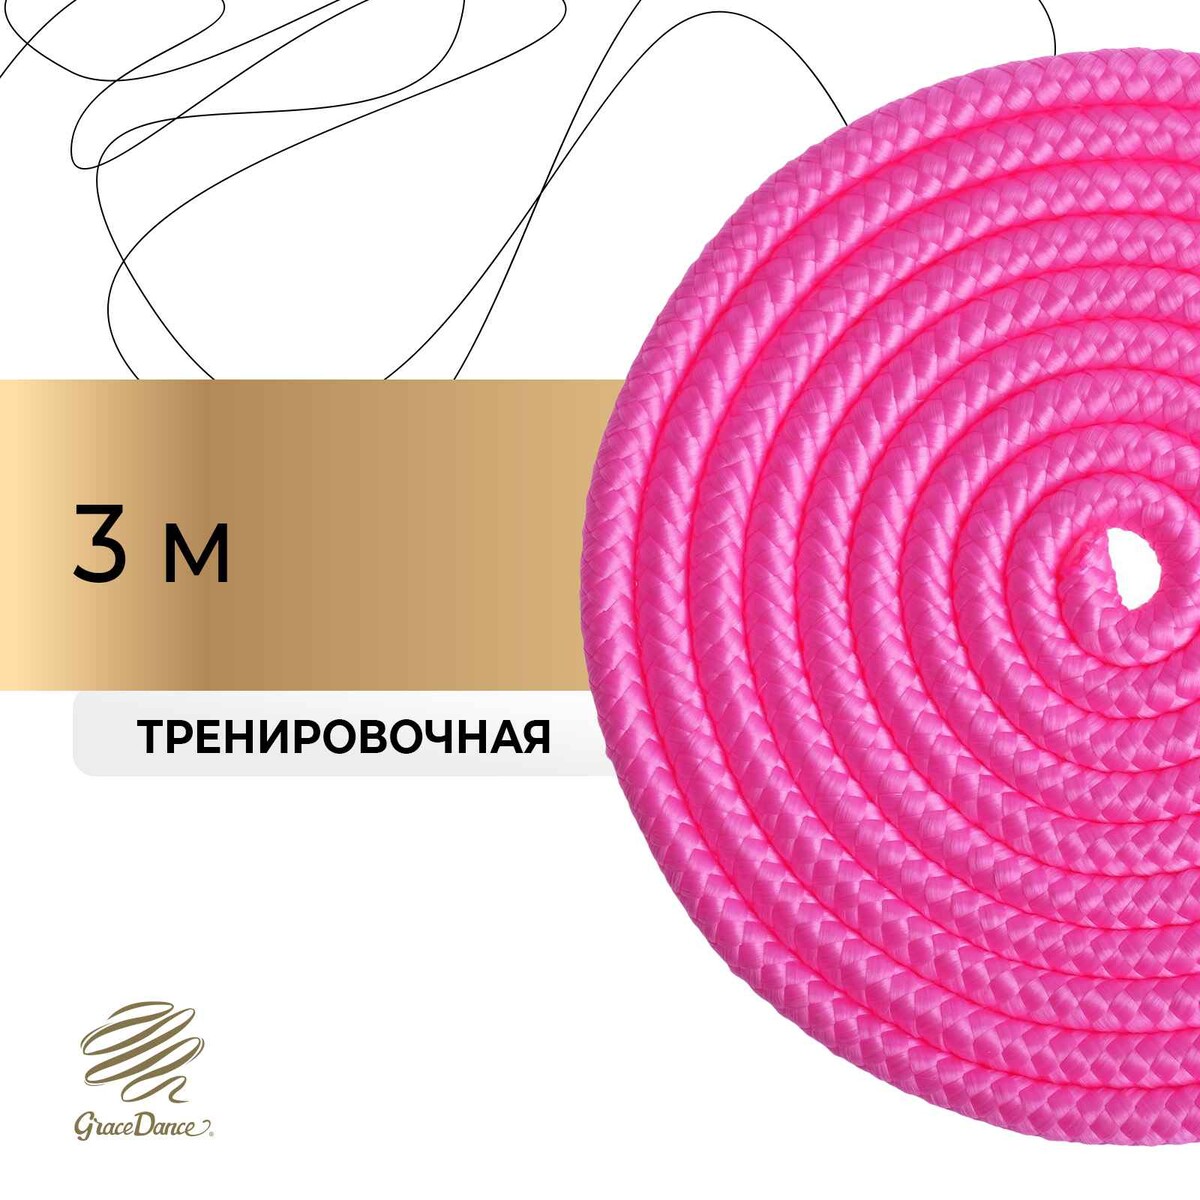 Скакалка для художественной гимнастики grace dance, 3 м, цвет розовый скакалка гимнастическая с люрексом body form bf sk03 bf jrgl01 2 5м 150гр розовый